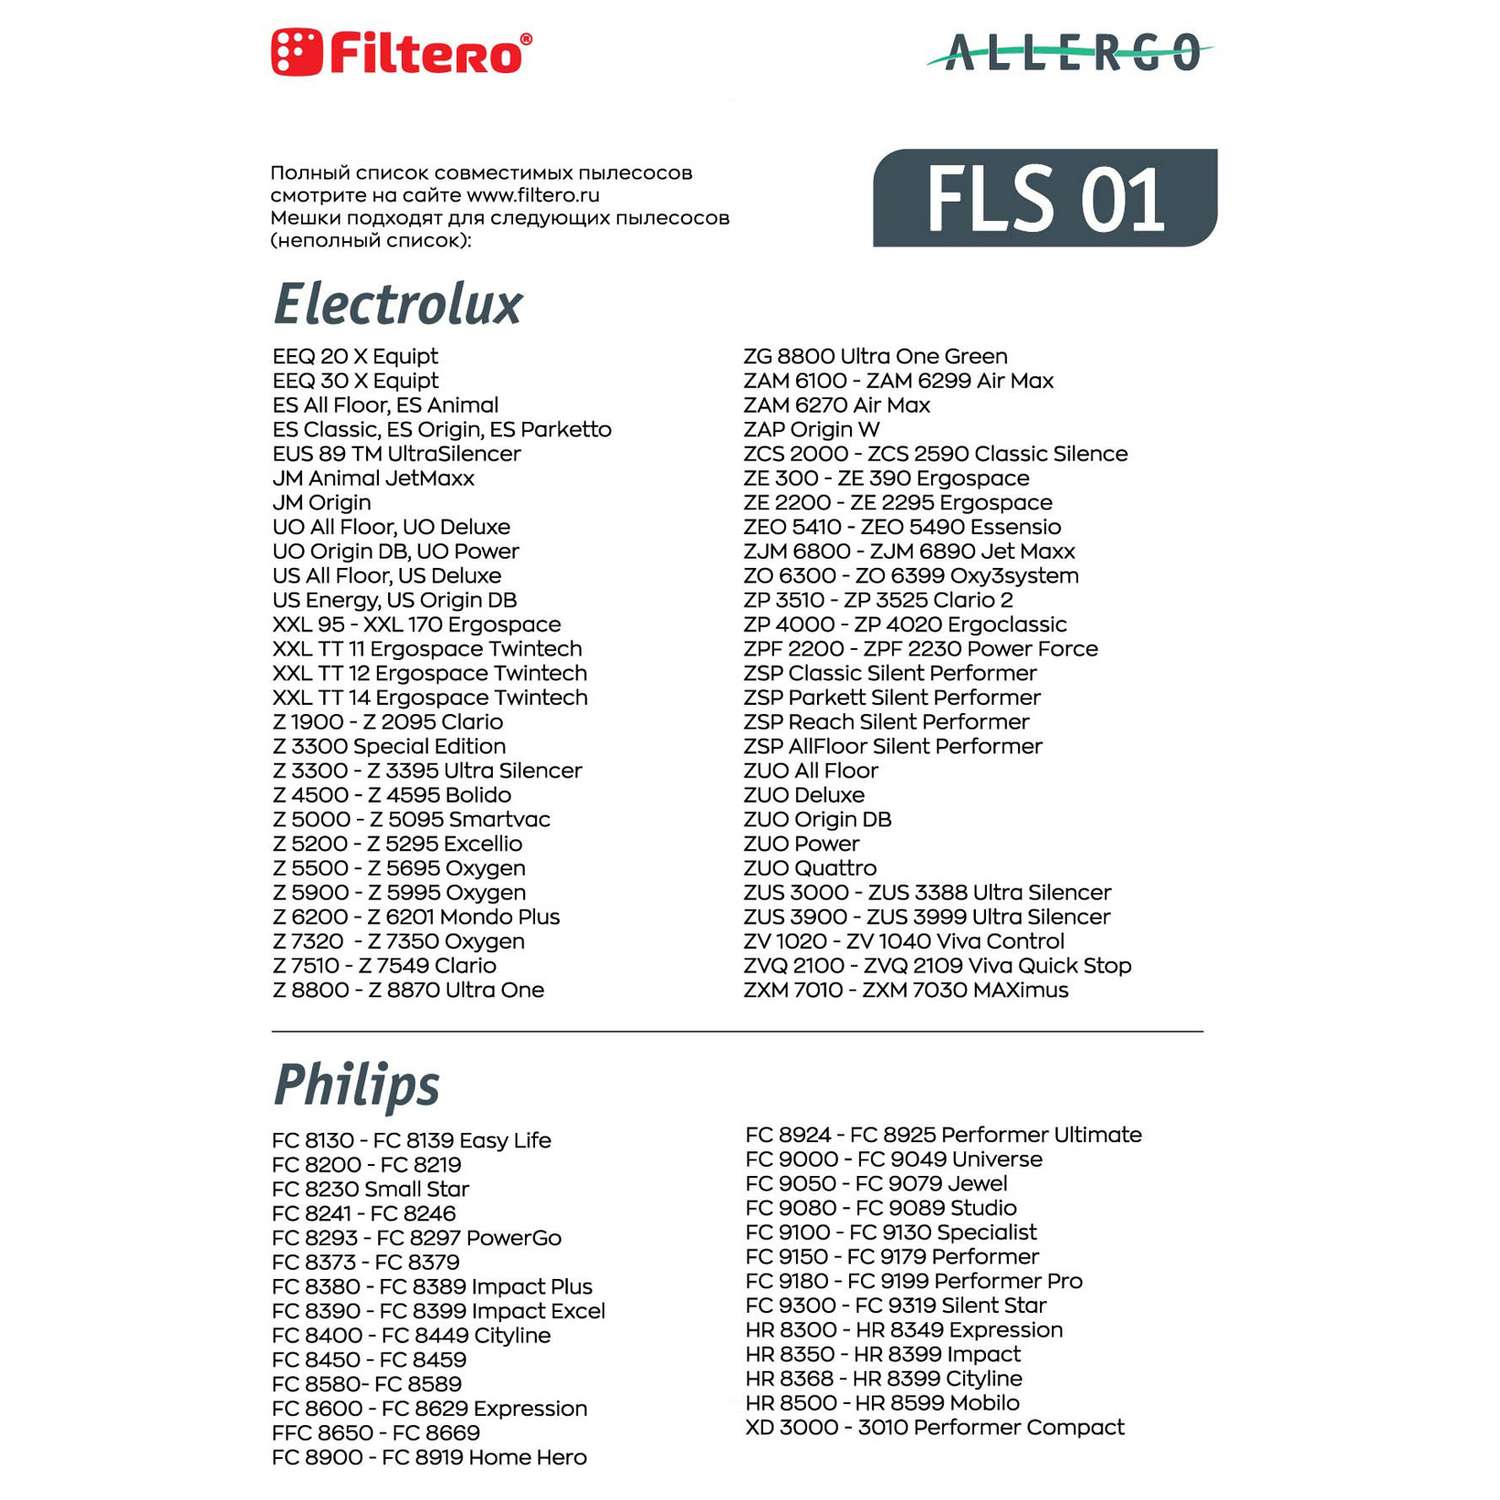 Пылесборники Filtero FLS 01 синтетические Allergo 4 шт - фото 9